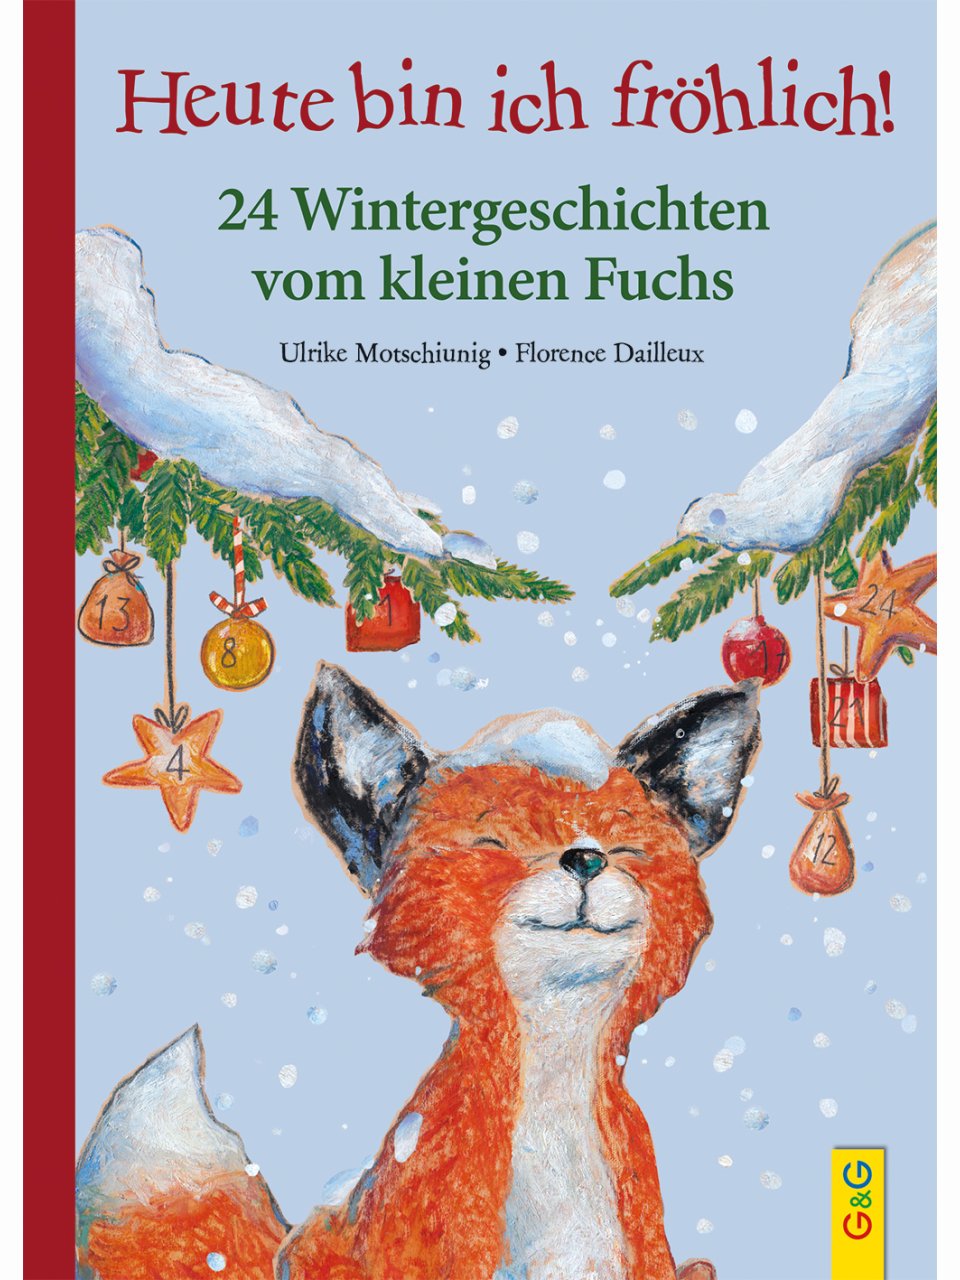 Heute bin ich fröhlich! 24 Wintergeschichten vom kleinen Fuchs